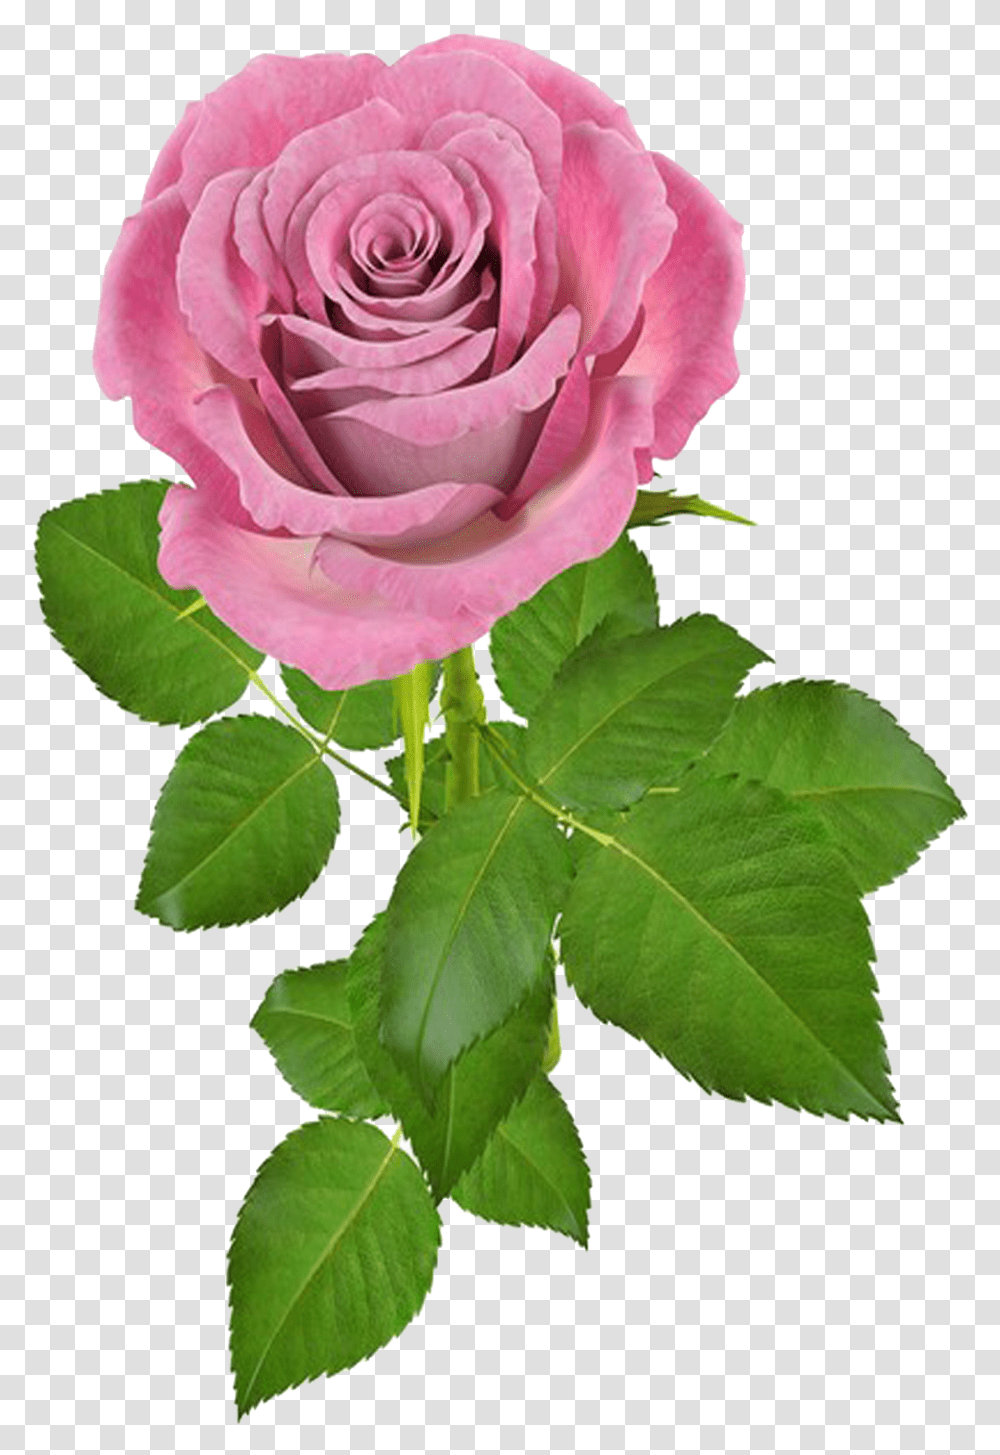 Rosa V Gif De Flores, Rose, Flower, Plant, Blossom Transparent Png